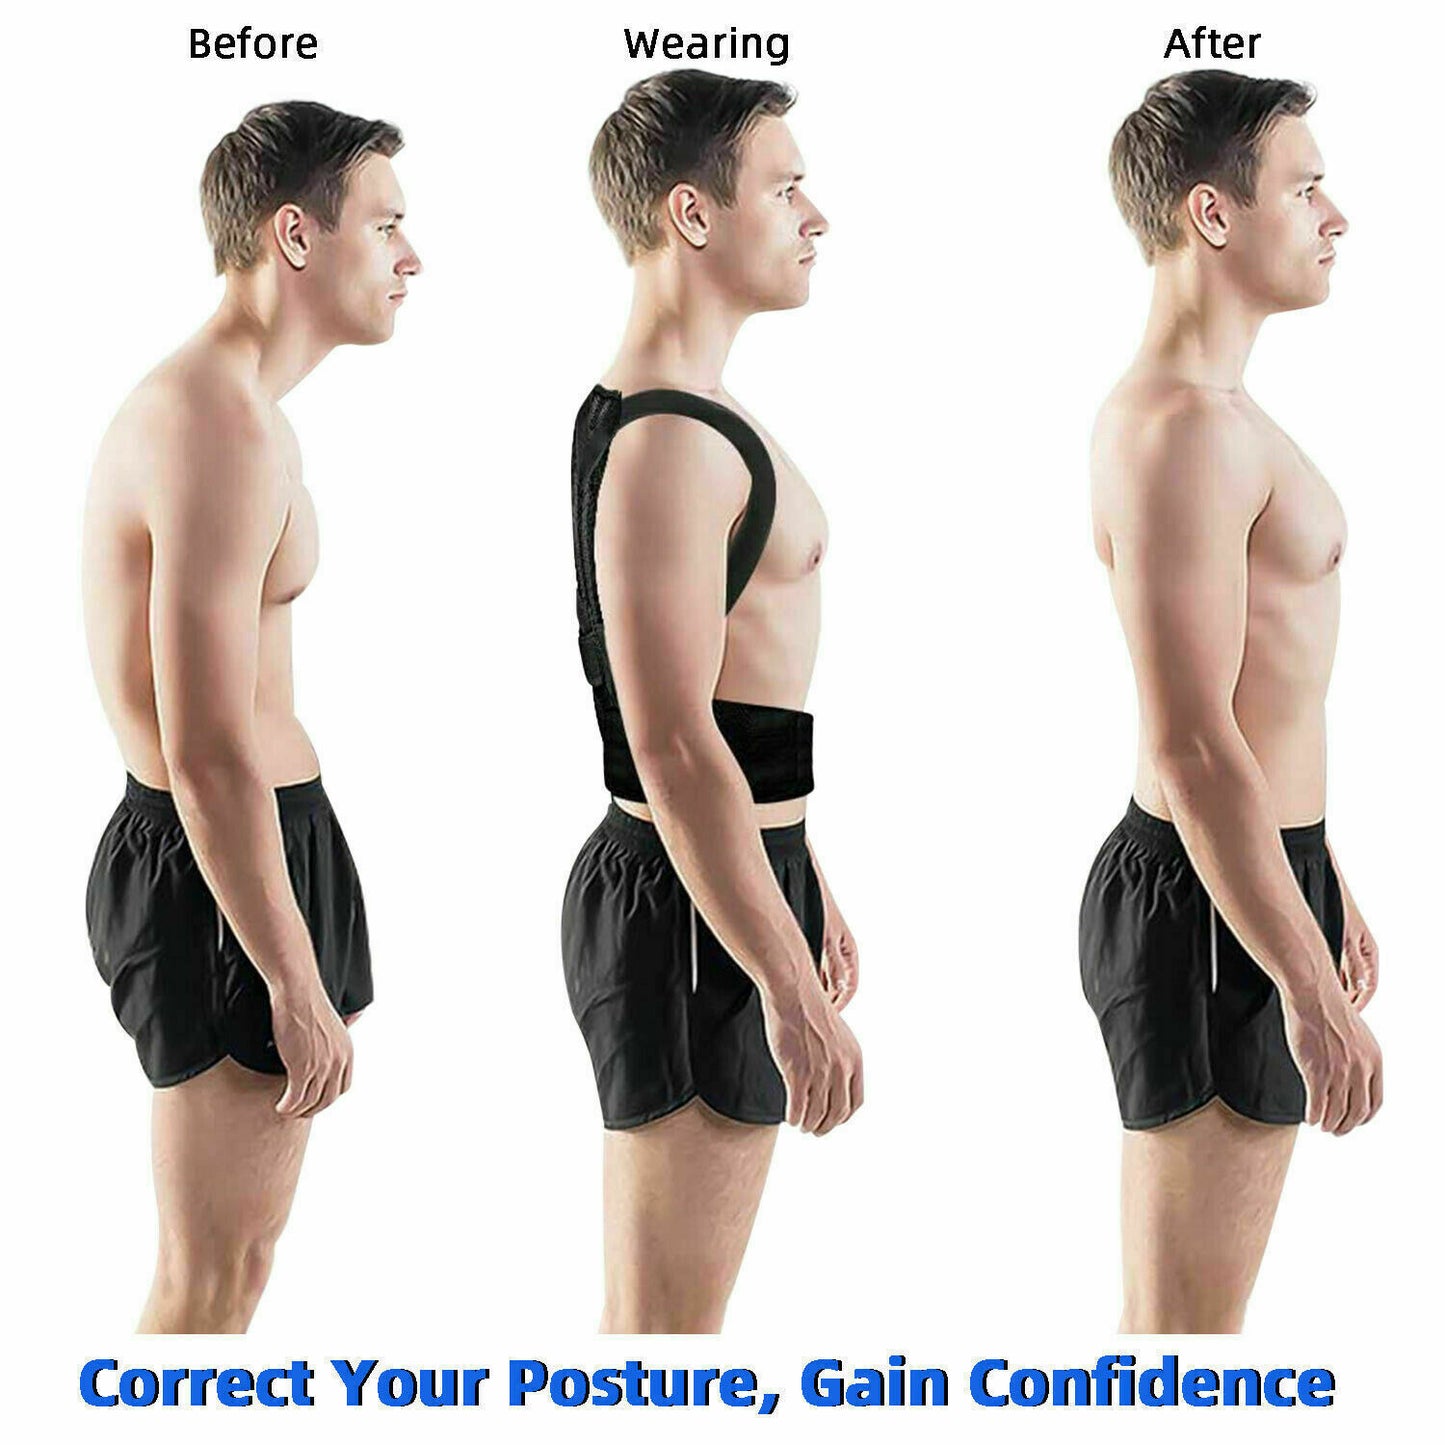 Adjustable Posture Corrector Low Back Support Shoulder Brace Belt for Men Women